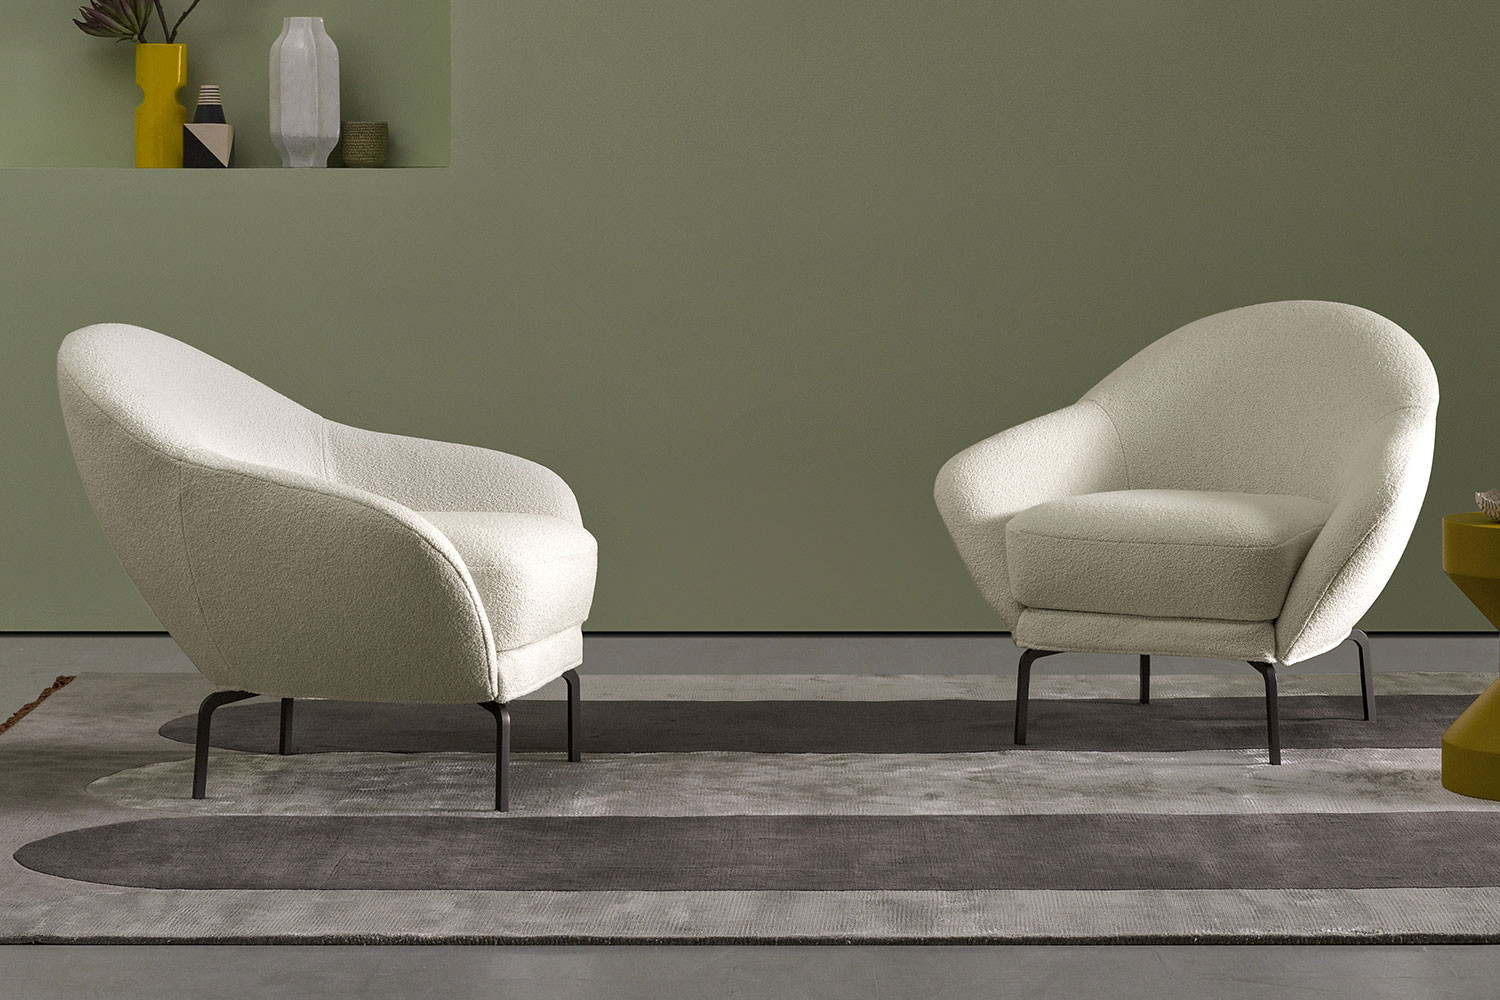 Giulia, origineller Sessel mit einer besonders abgerundeten Form, Design von Rita Consonni